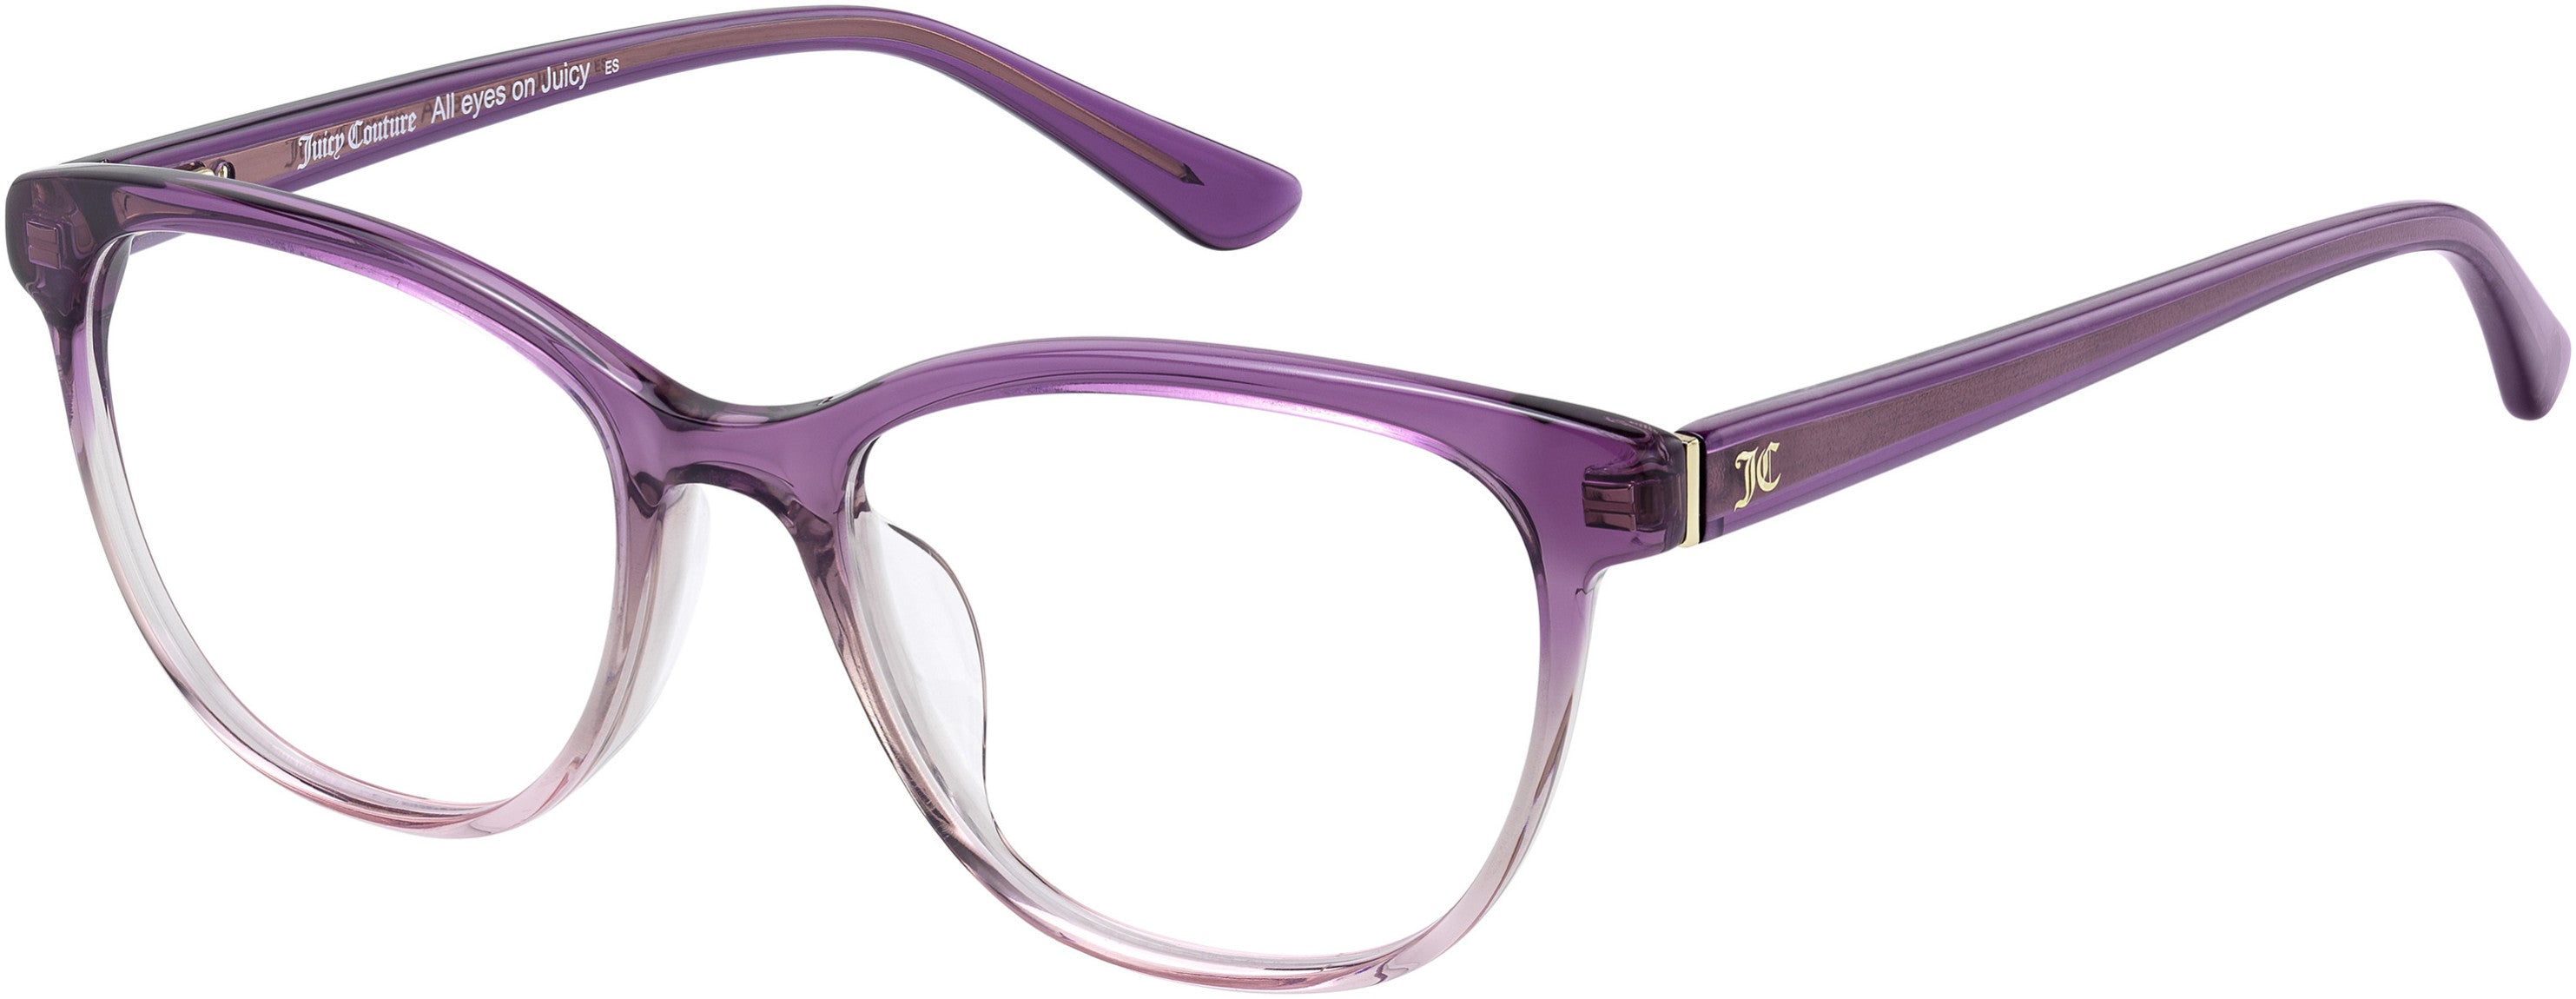 Juicy Couture Juicy 197 Rectangular Eyeglasses 0B3V-0B3V  Violet (00 Demo Lens)